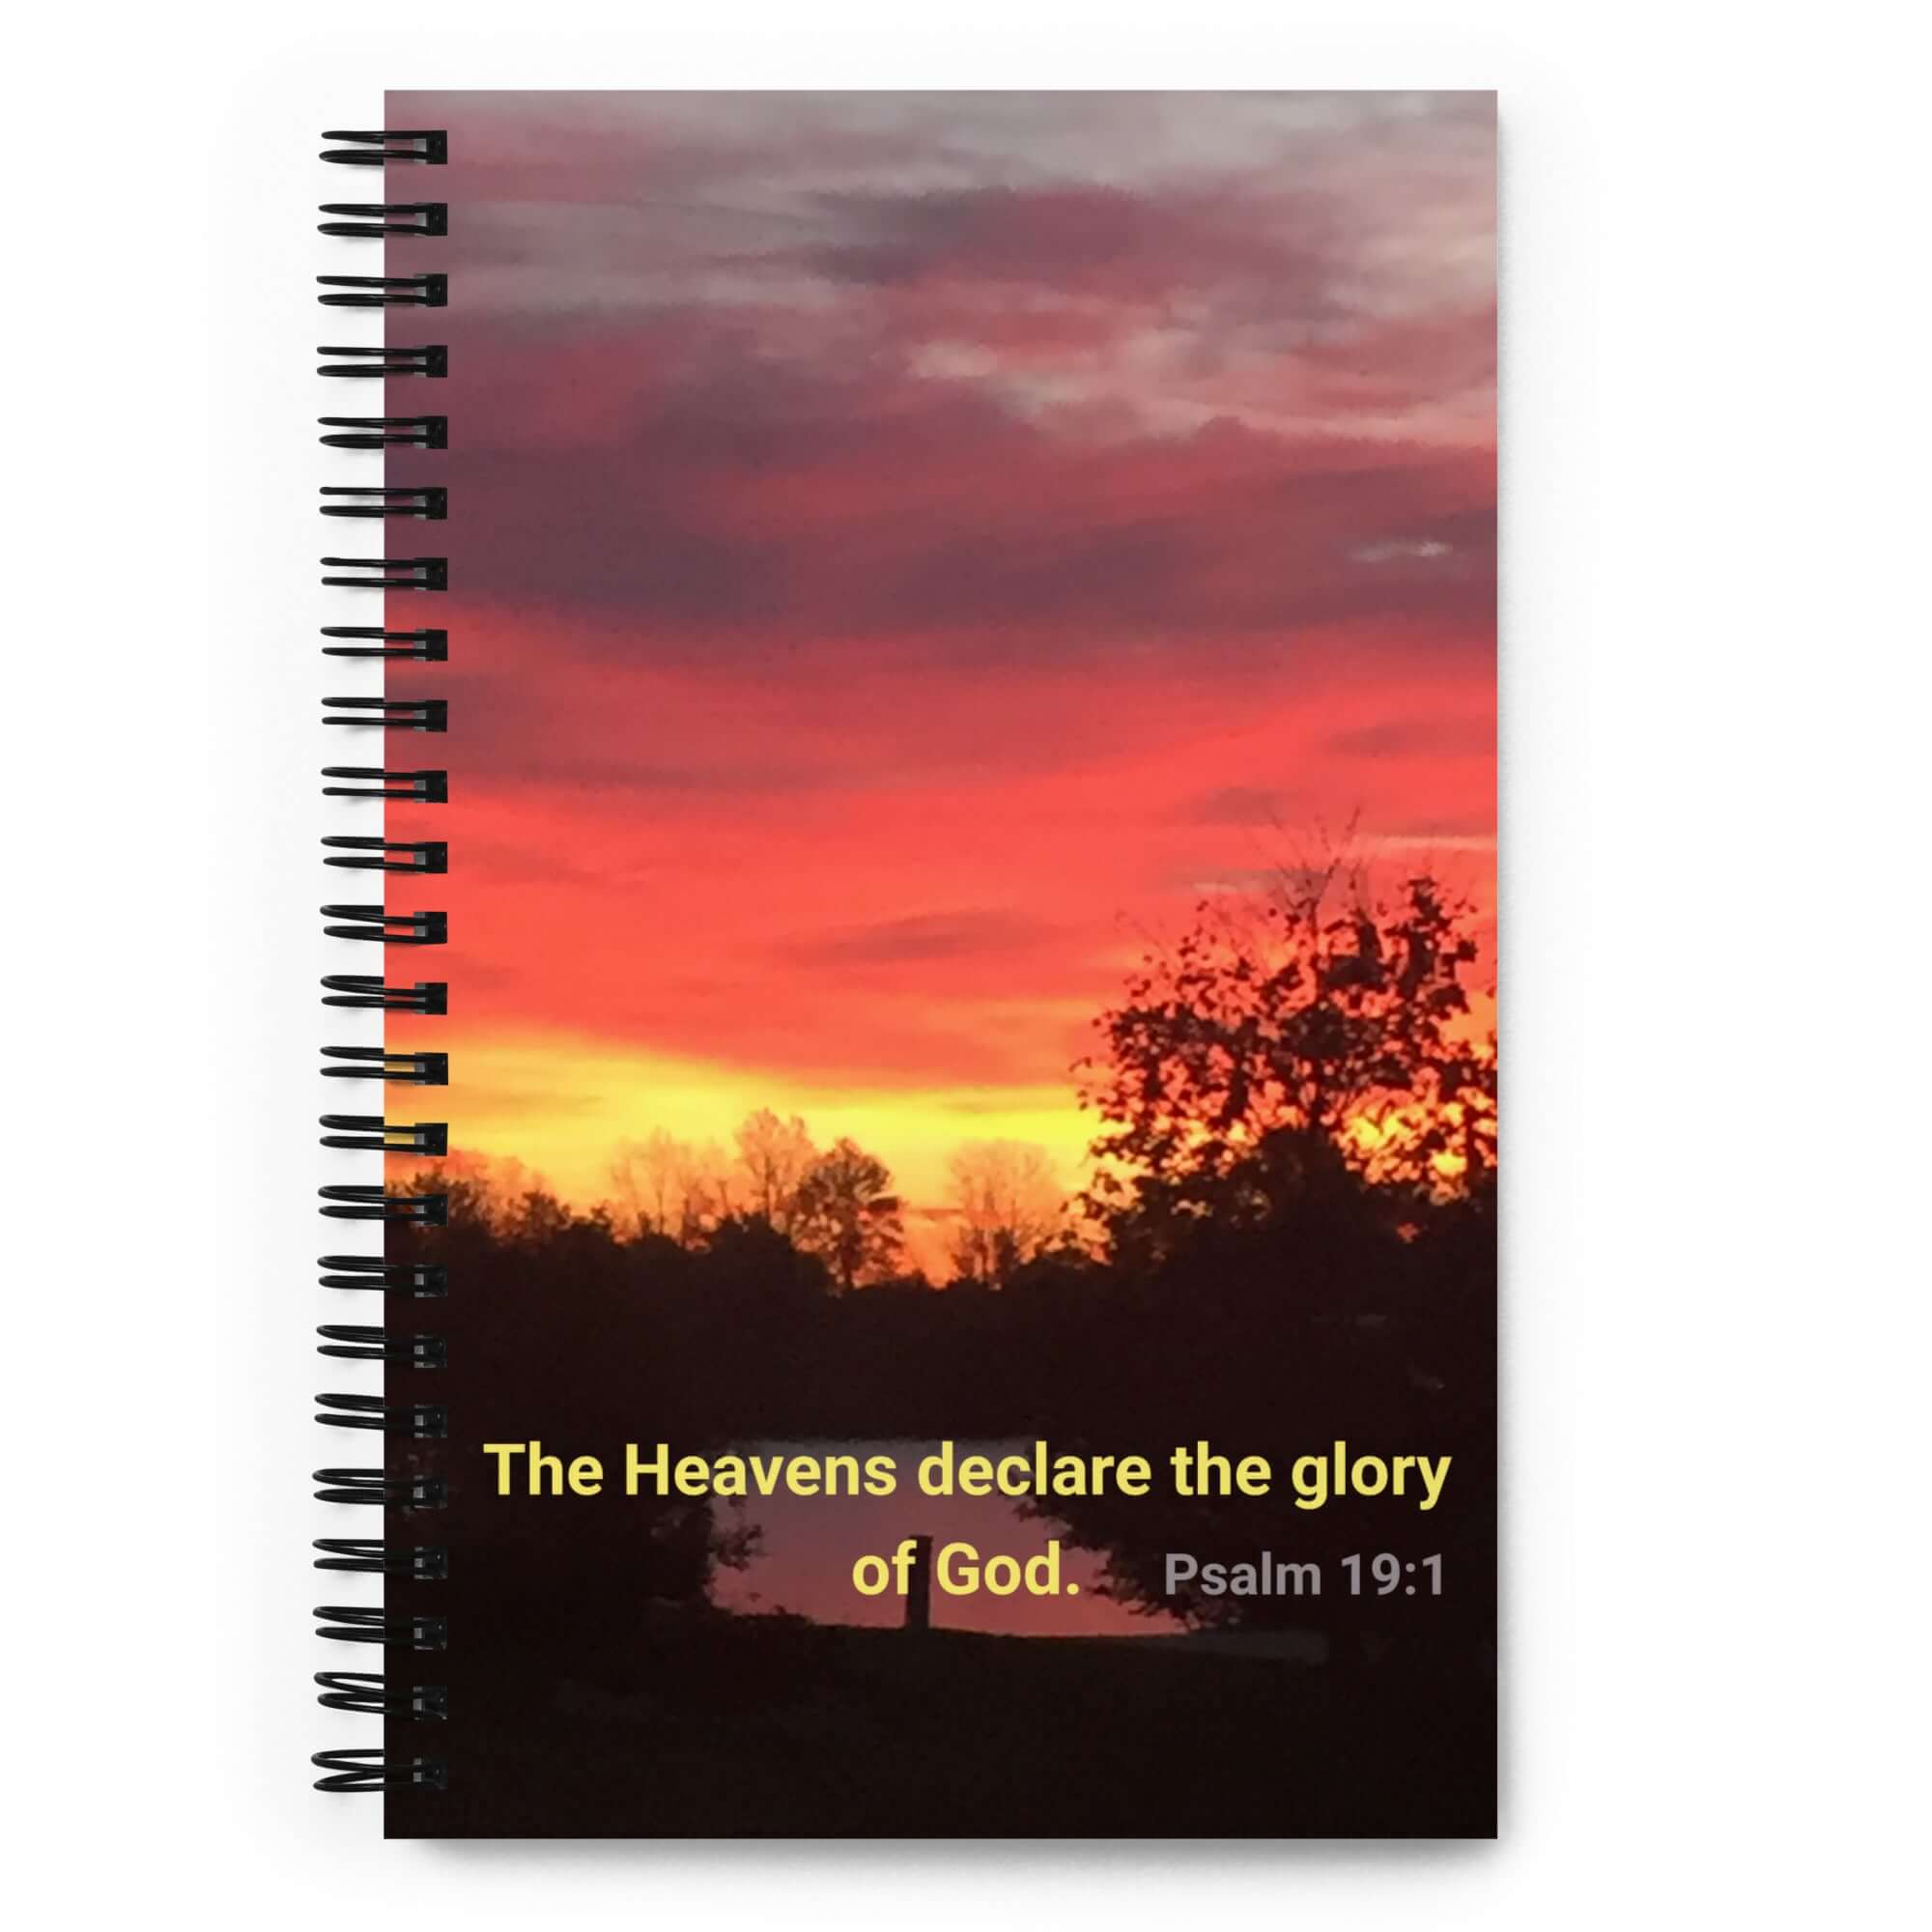 Psalm 19:1 Bible Verse, Sunset Glory Spiral Notebook